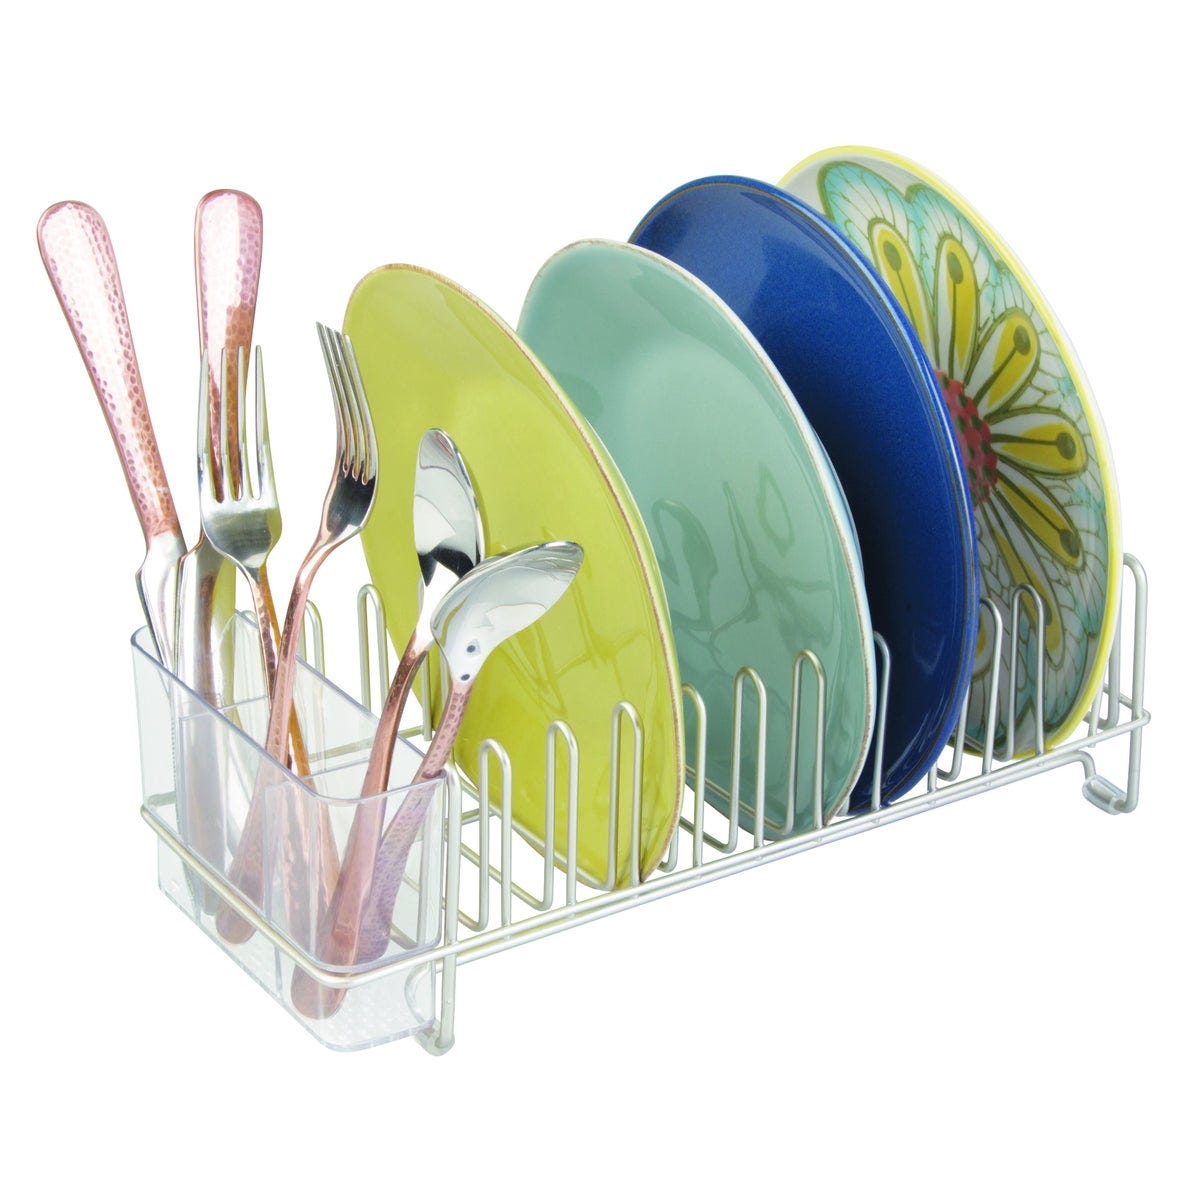 Egouttoir à vaisselle en plastique IDesign collection forma